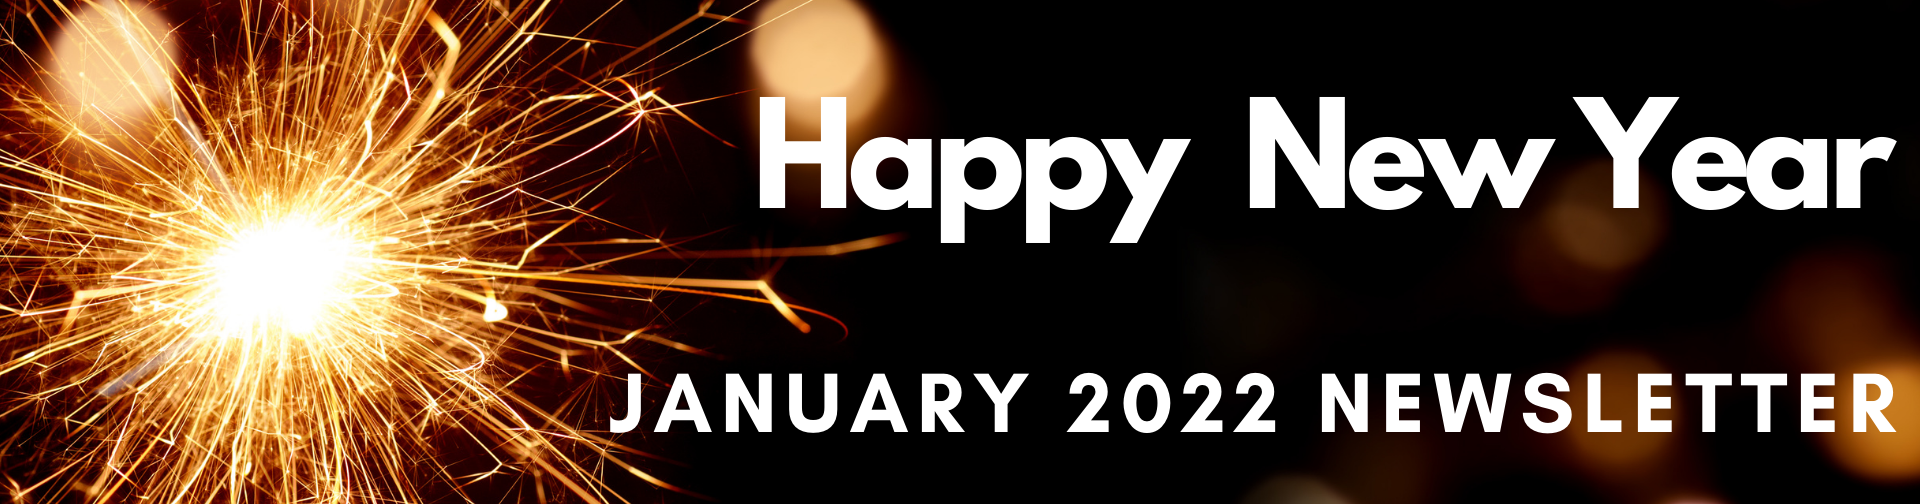 January 2022 Newsletter Link